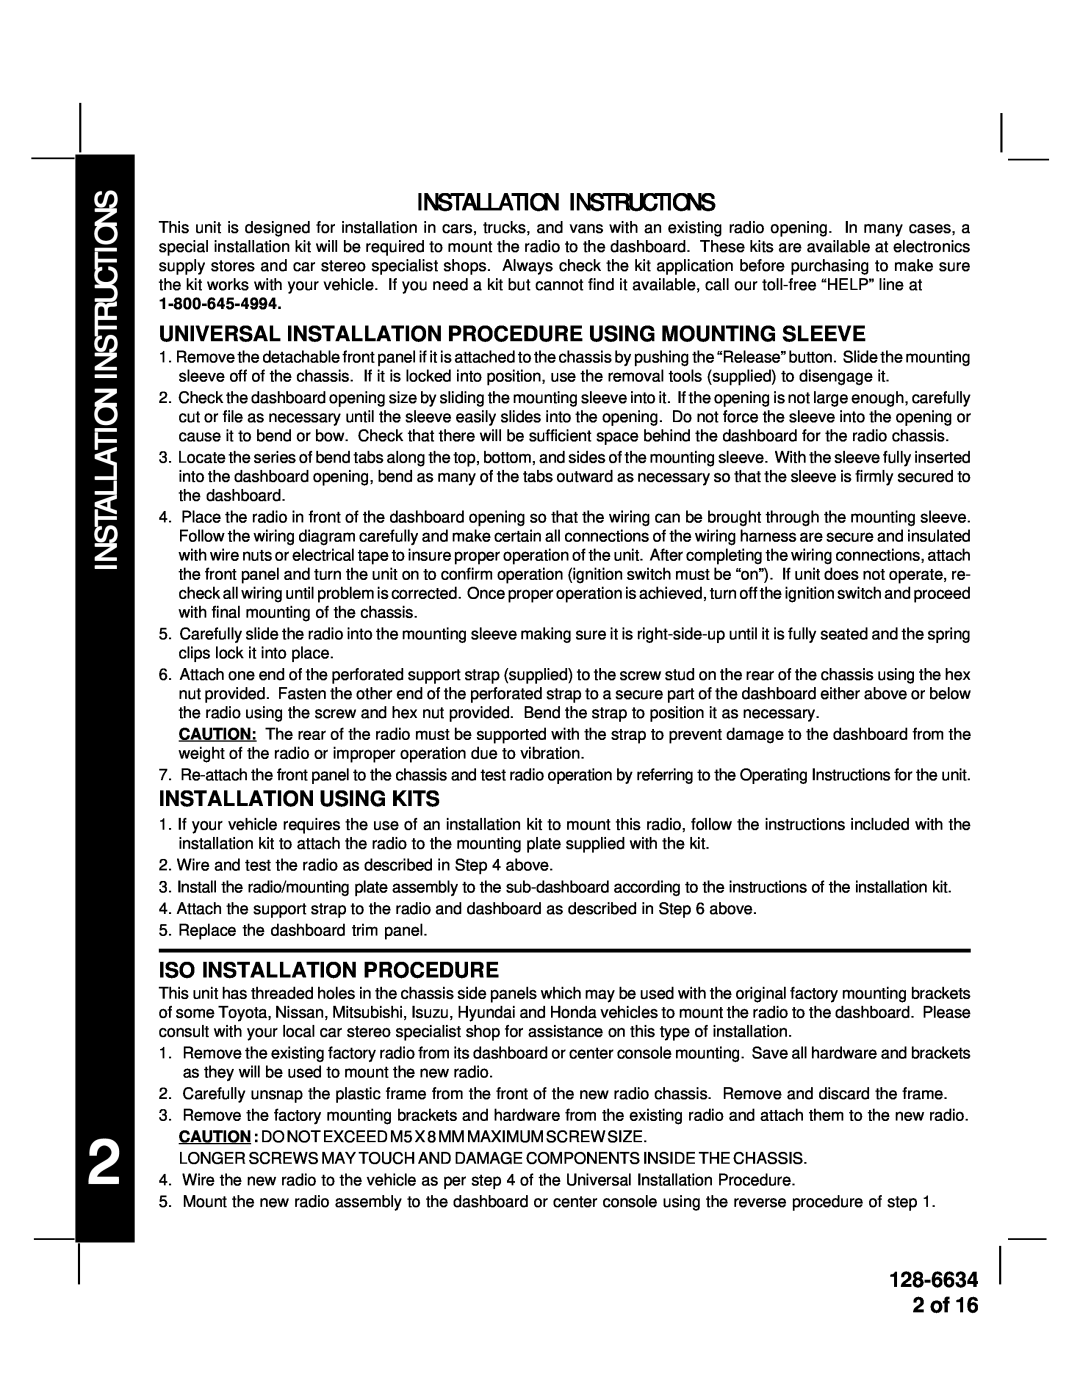 Audiovox AV-428V manual Installation Instructions, Universal Installation Procedure Using Mounting Sleeve, 128-6634 2 of 